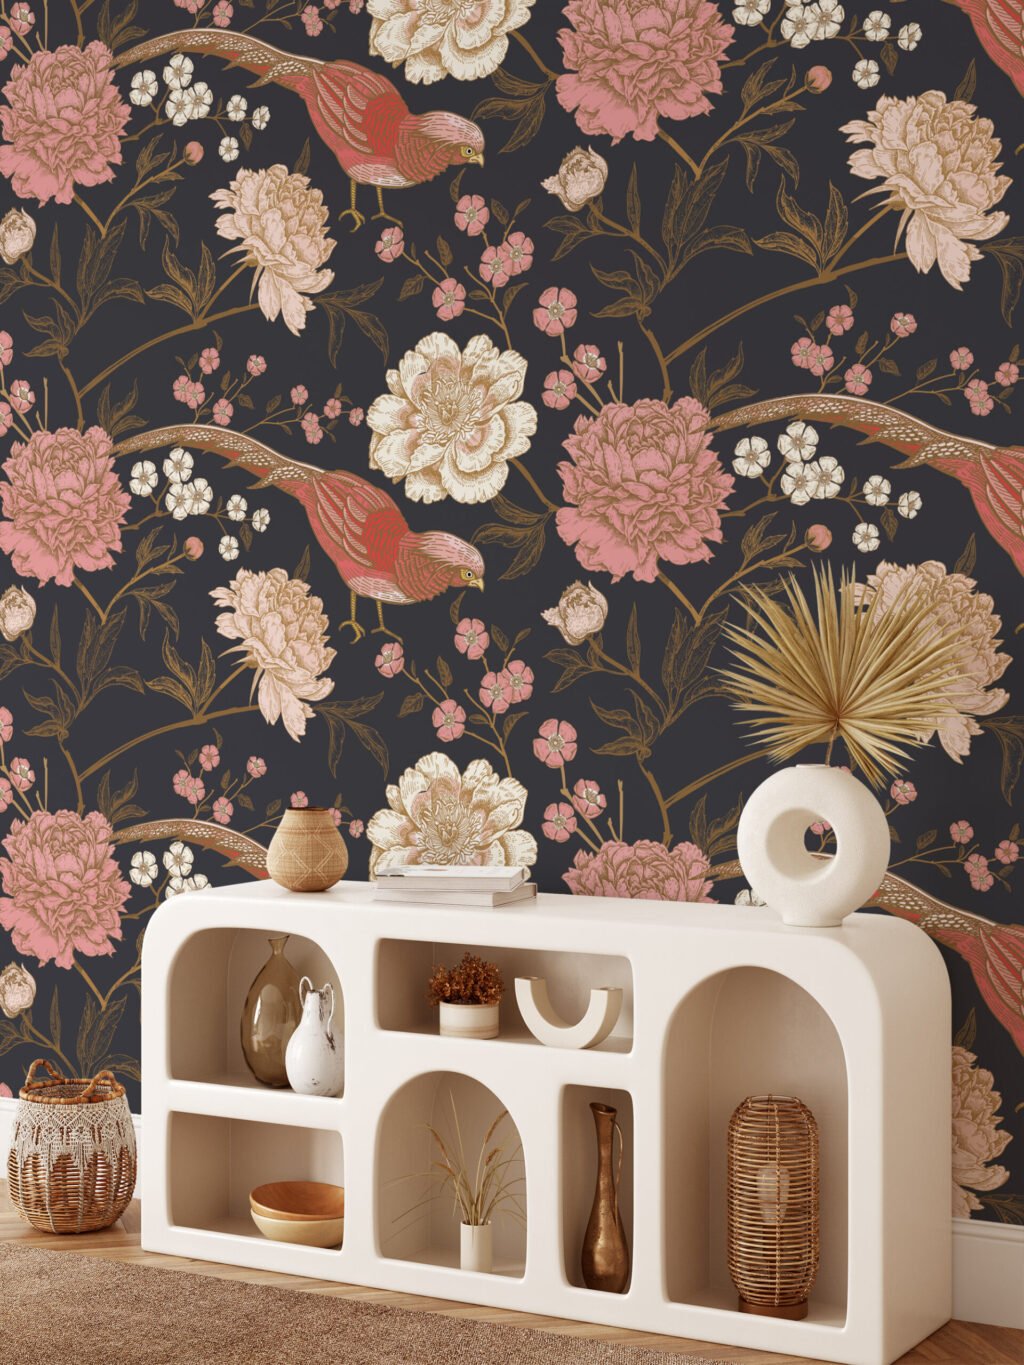 Geleneksel Stil Çiçekli Duvar Kağıdı, Gül Pembesi Kuşlar ve Koyu Zeminli Duvar Posteri Çiçekli Duvar Kağıtları 2